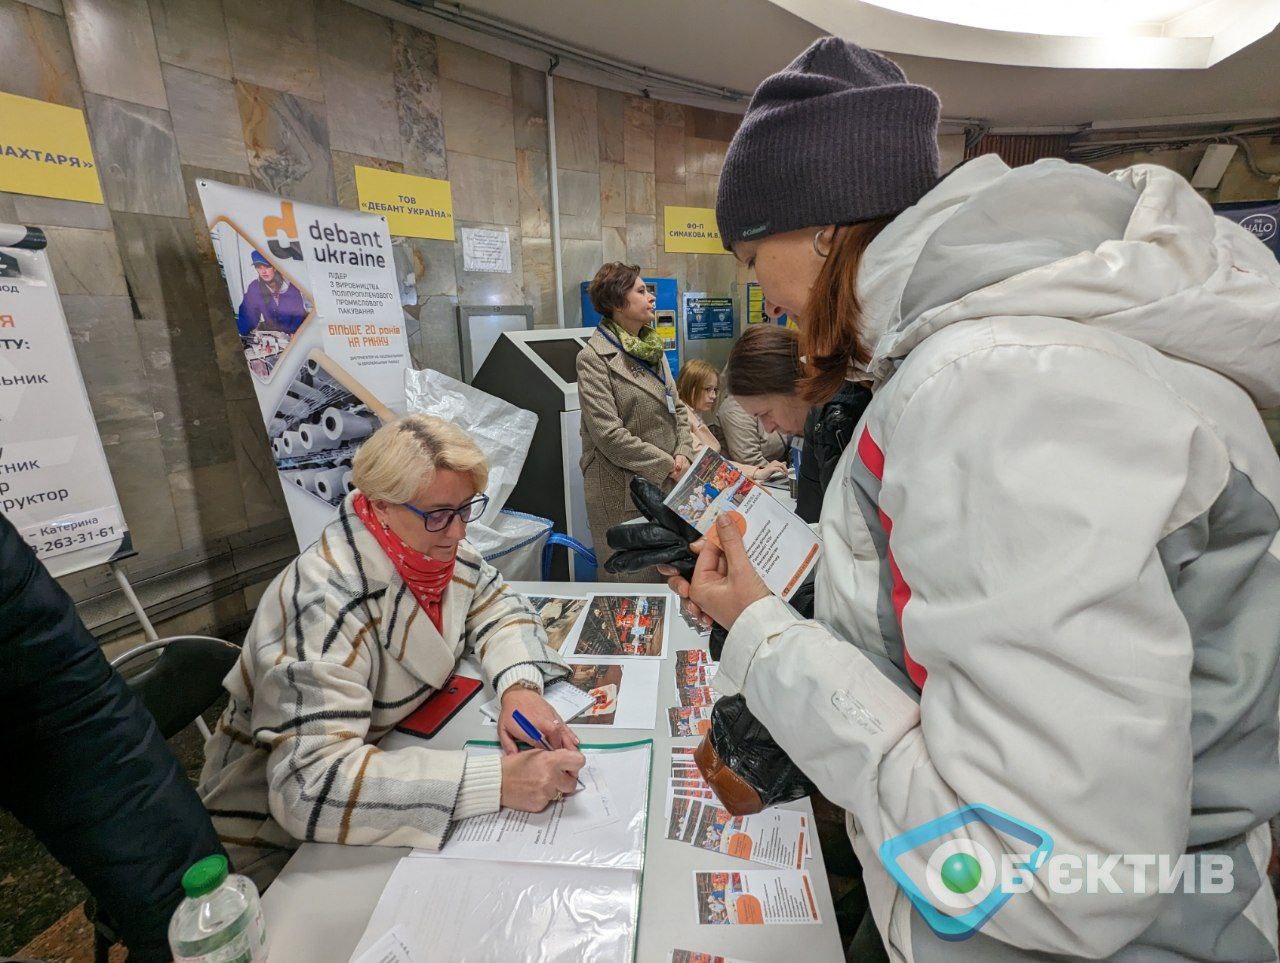 В Харькове предлагают работу: каждый месяц вакансий становится больше (фото)